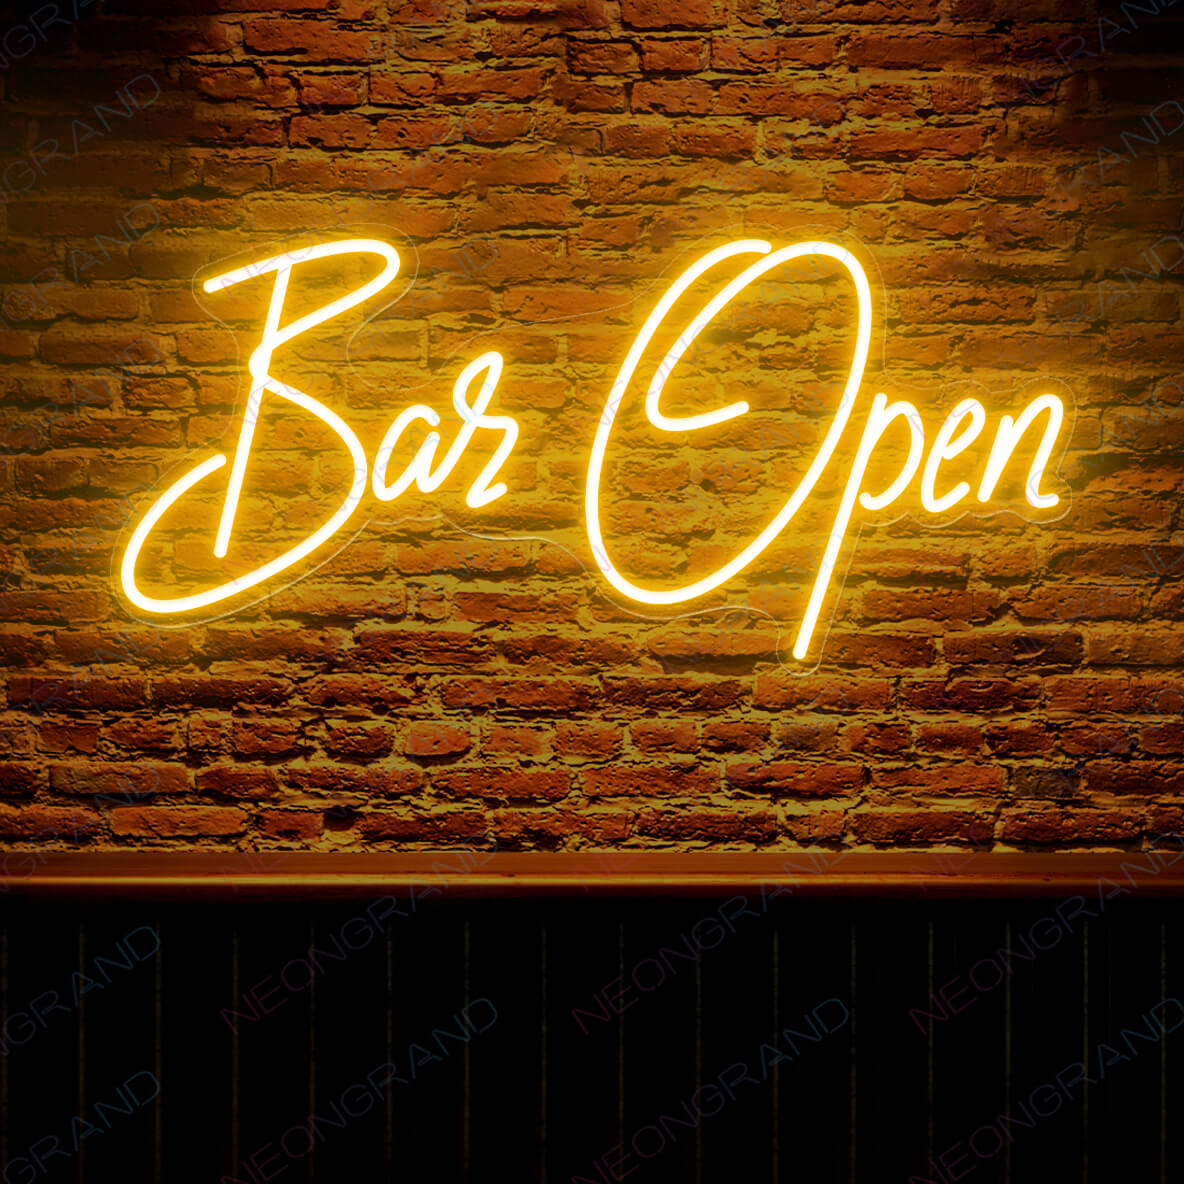 Open Sign Neon Aesthetic Led Light Bar Open orange yellow